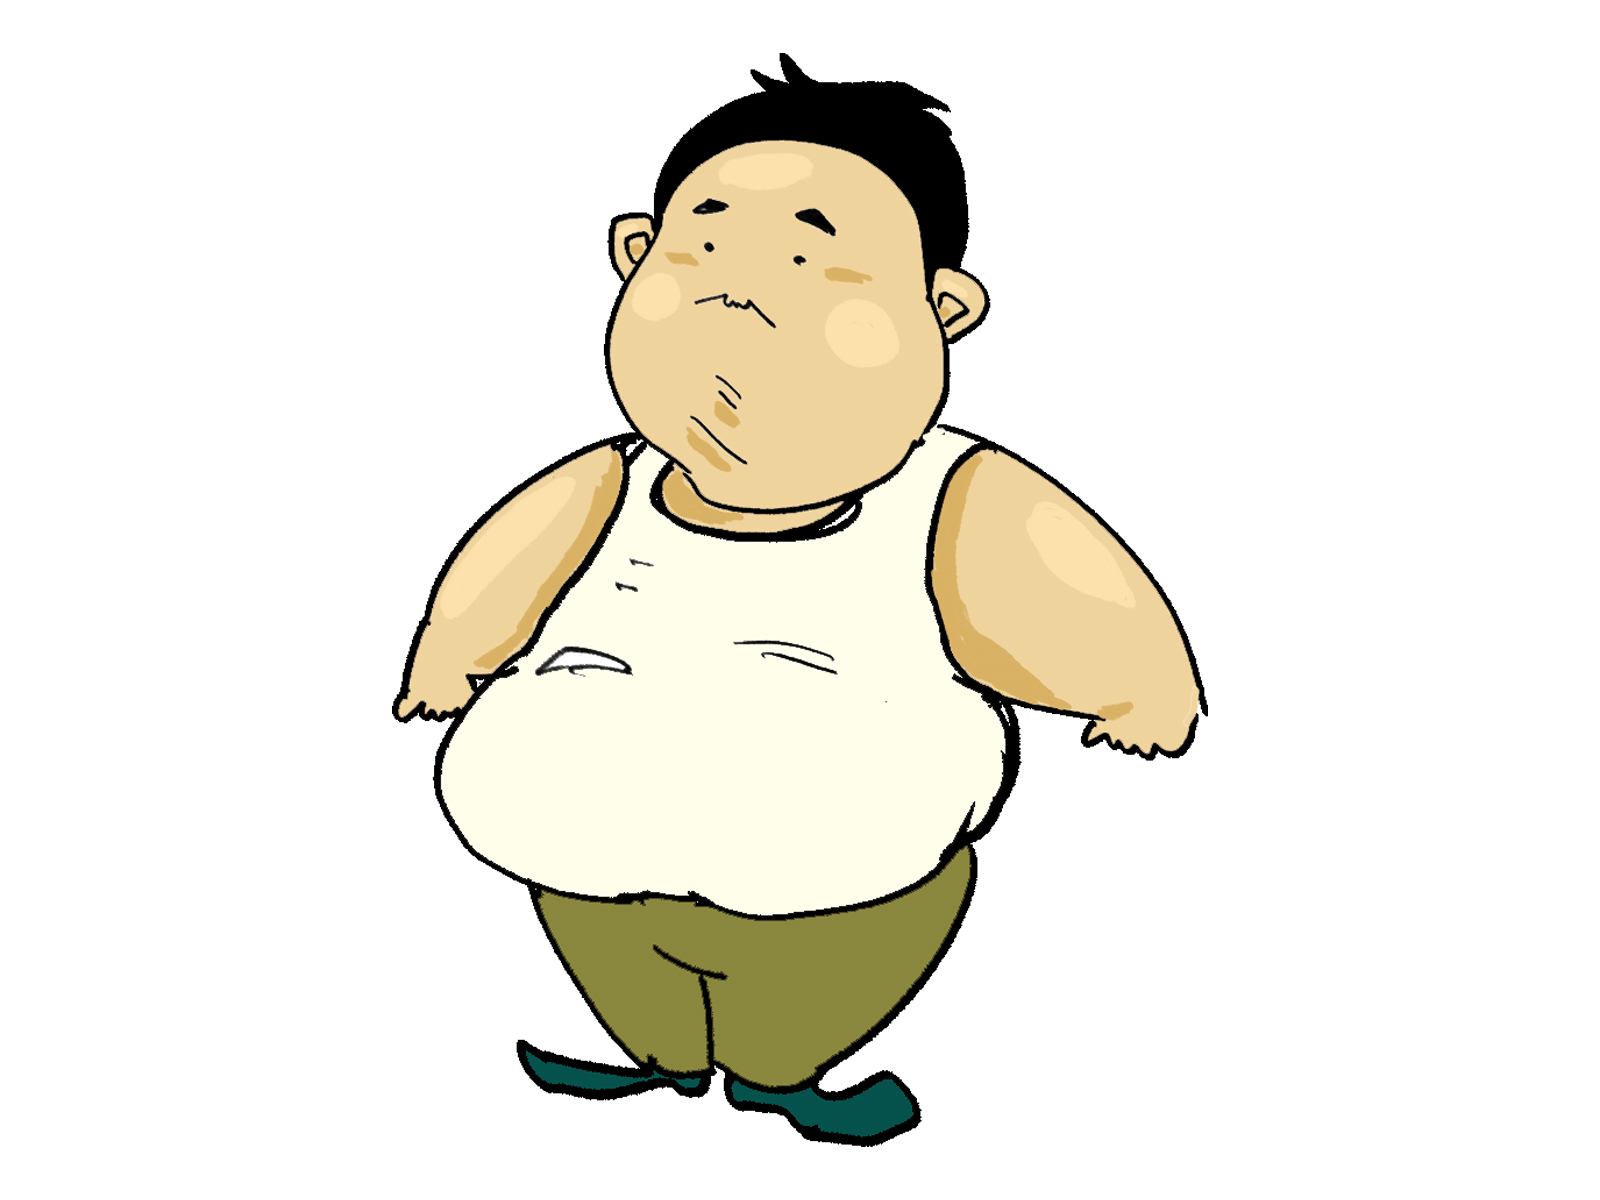 肥満予防は 毎日コツコツ が成功の近道 ライフサポートサービス株式会社 埼玉県の健康経営 健康診断